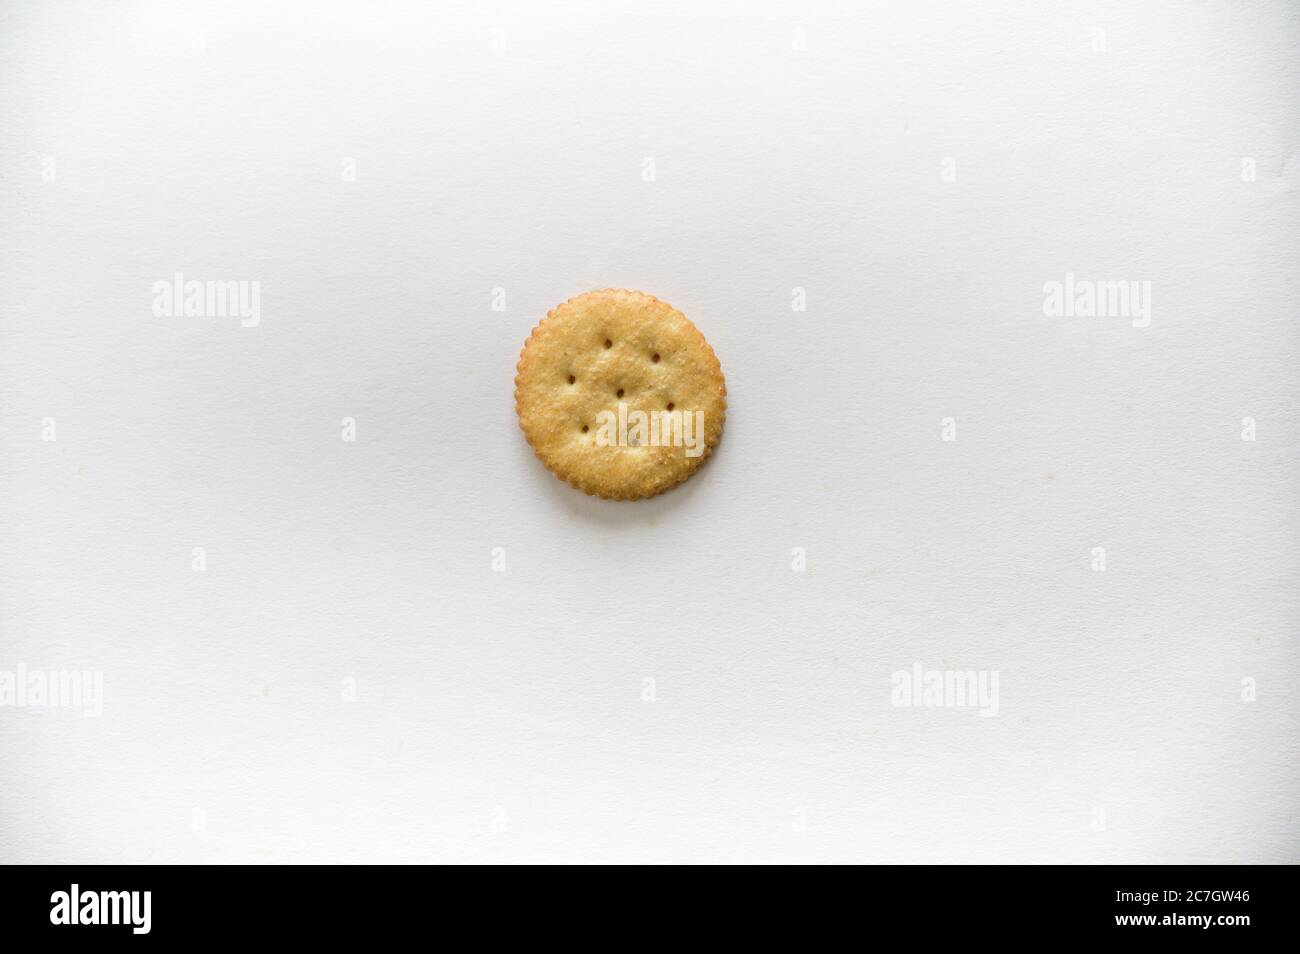 Immagine ad angolo elevato di un biscotto su una superficie bianca Foto Stock